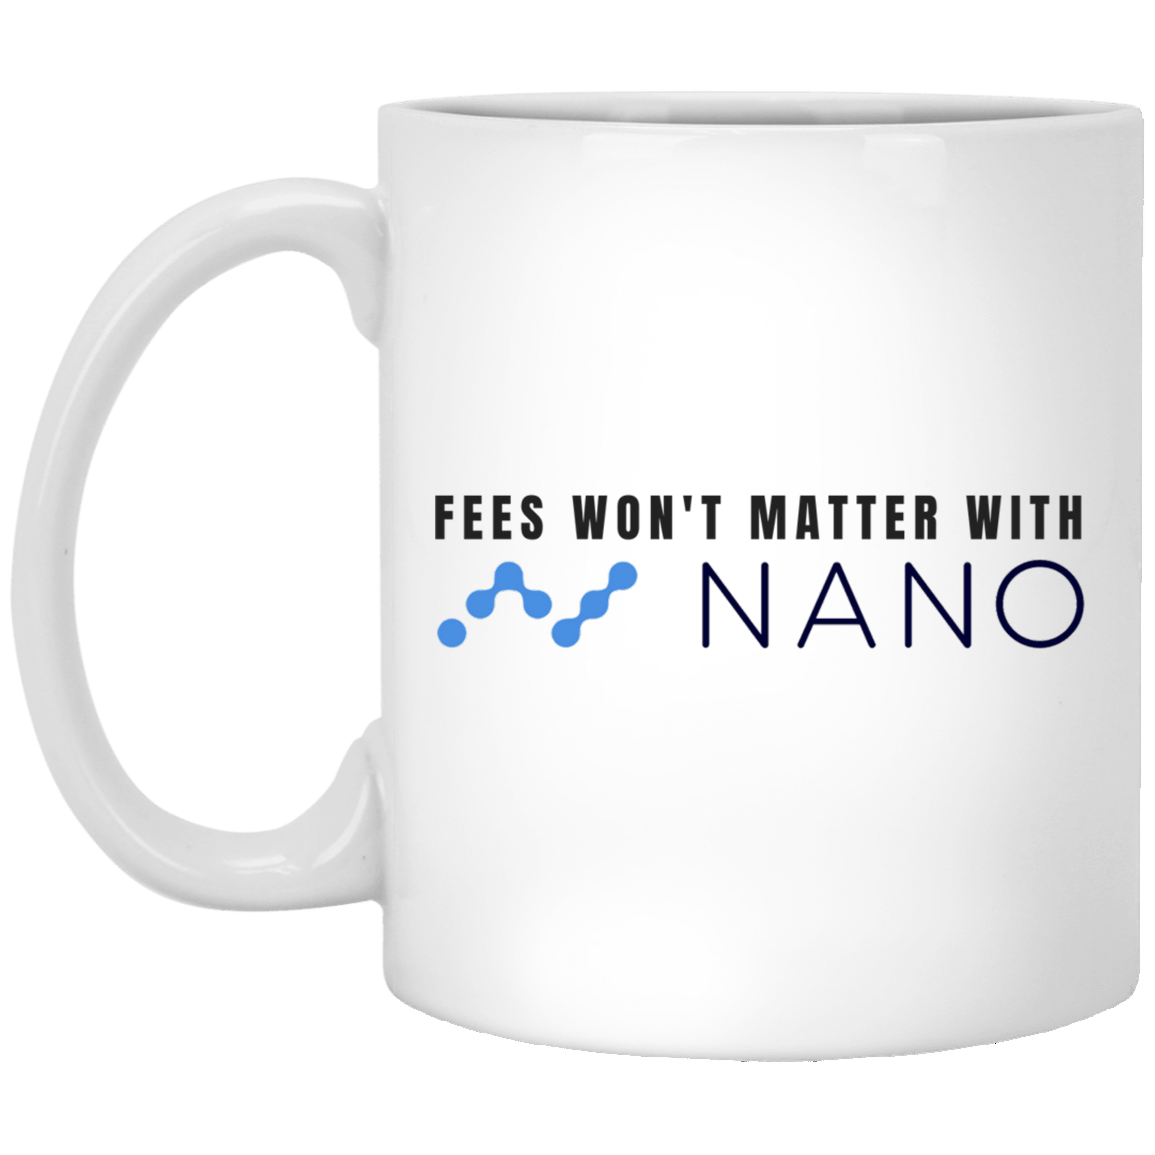 Fees won't matter with nano - 11oz. White Mug TCP1607 White / One Size Official Crypto  Merch